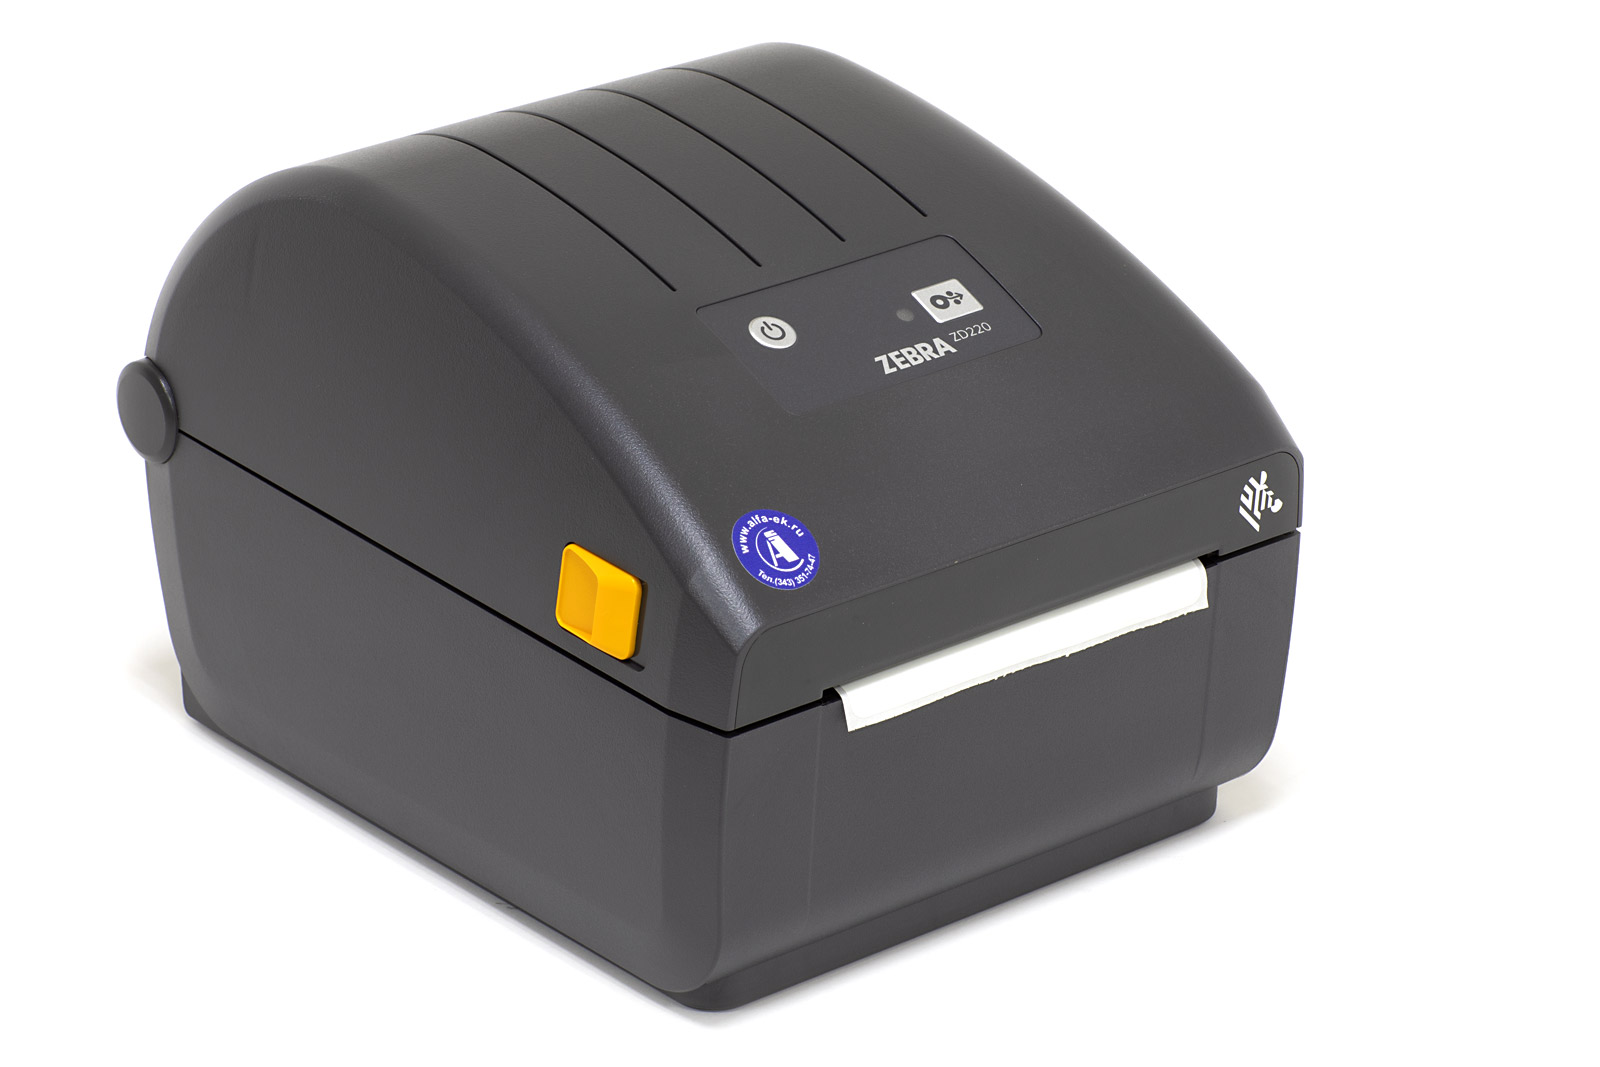 Принтер этикеток Zebra ZD220d